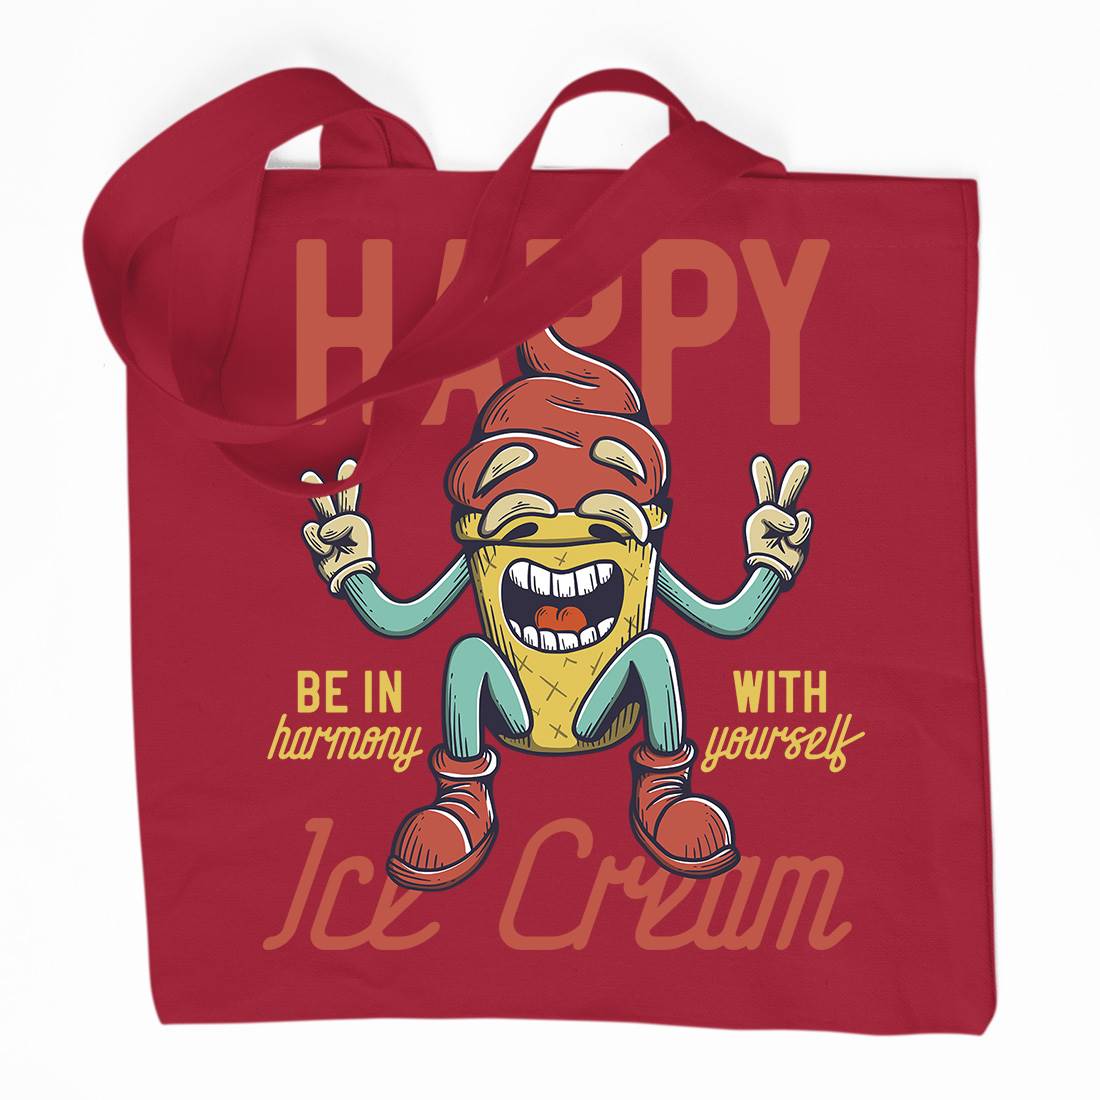 Happy Ice Cream Organic Premium Cotton Tote Bag Food D940